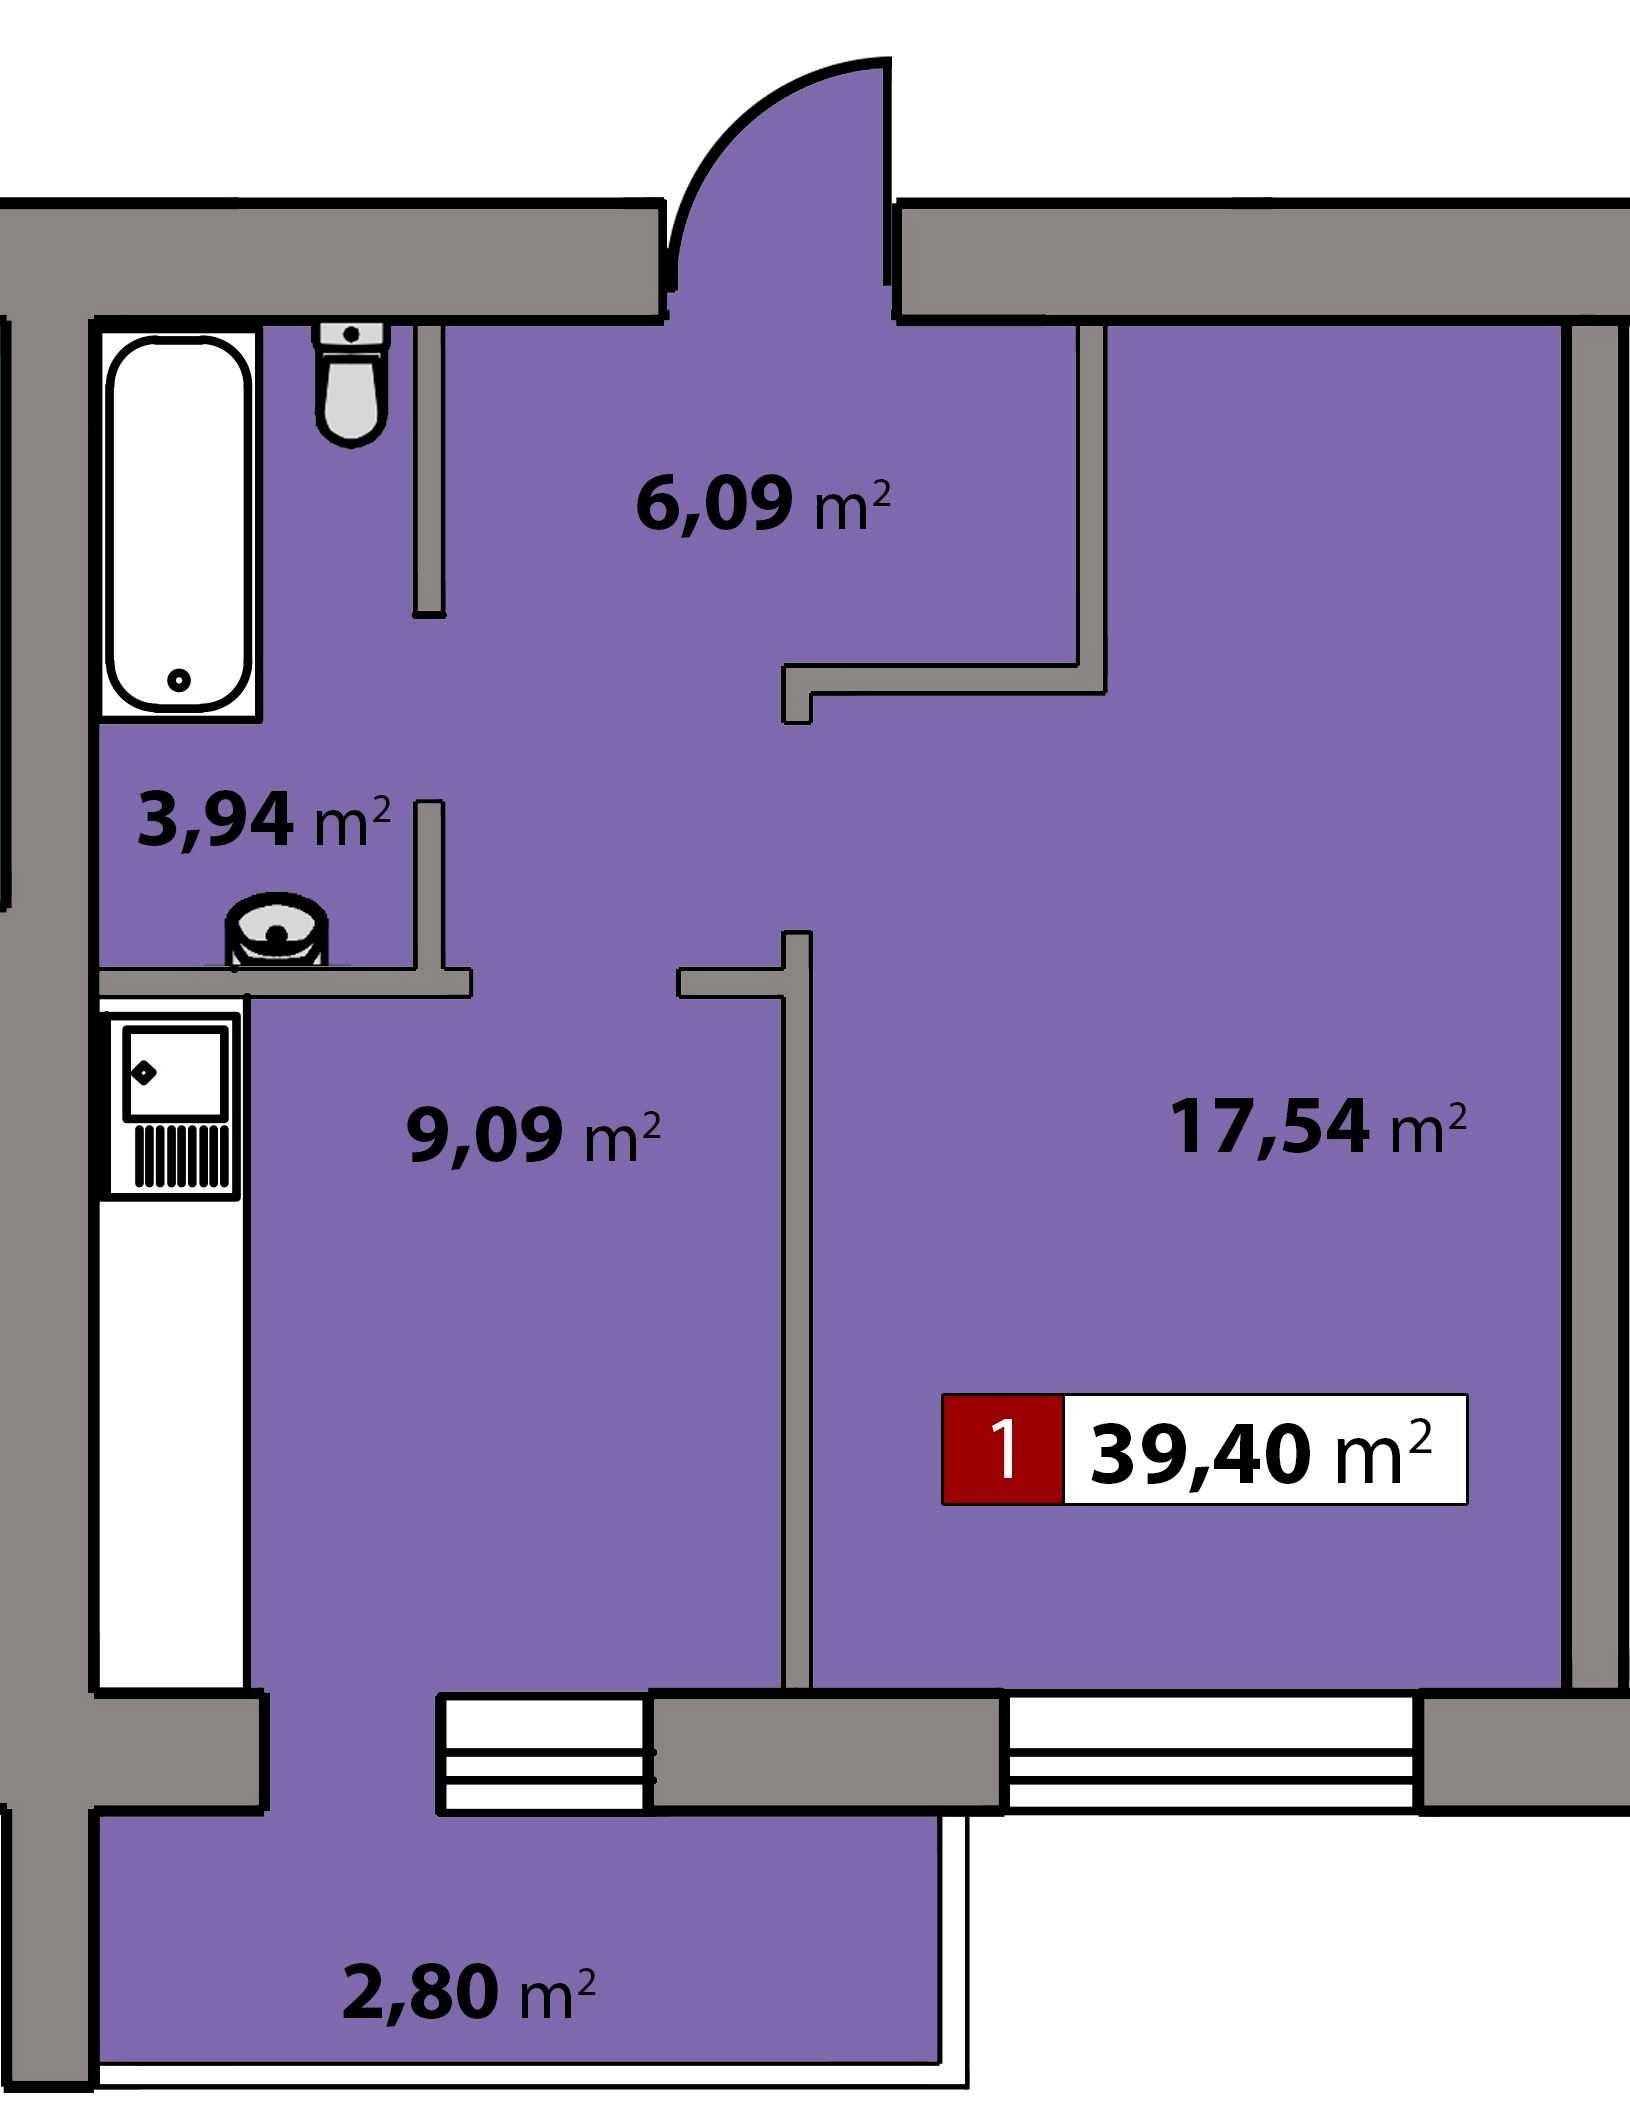 Однокімнатна квартиру ЖК Парковий квартал оплата за 20 місяців